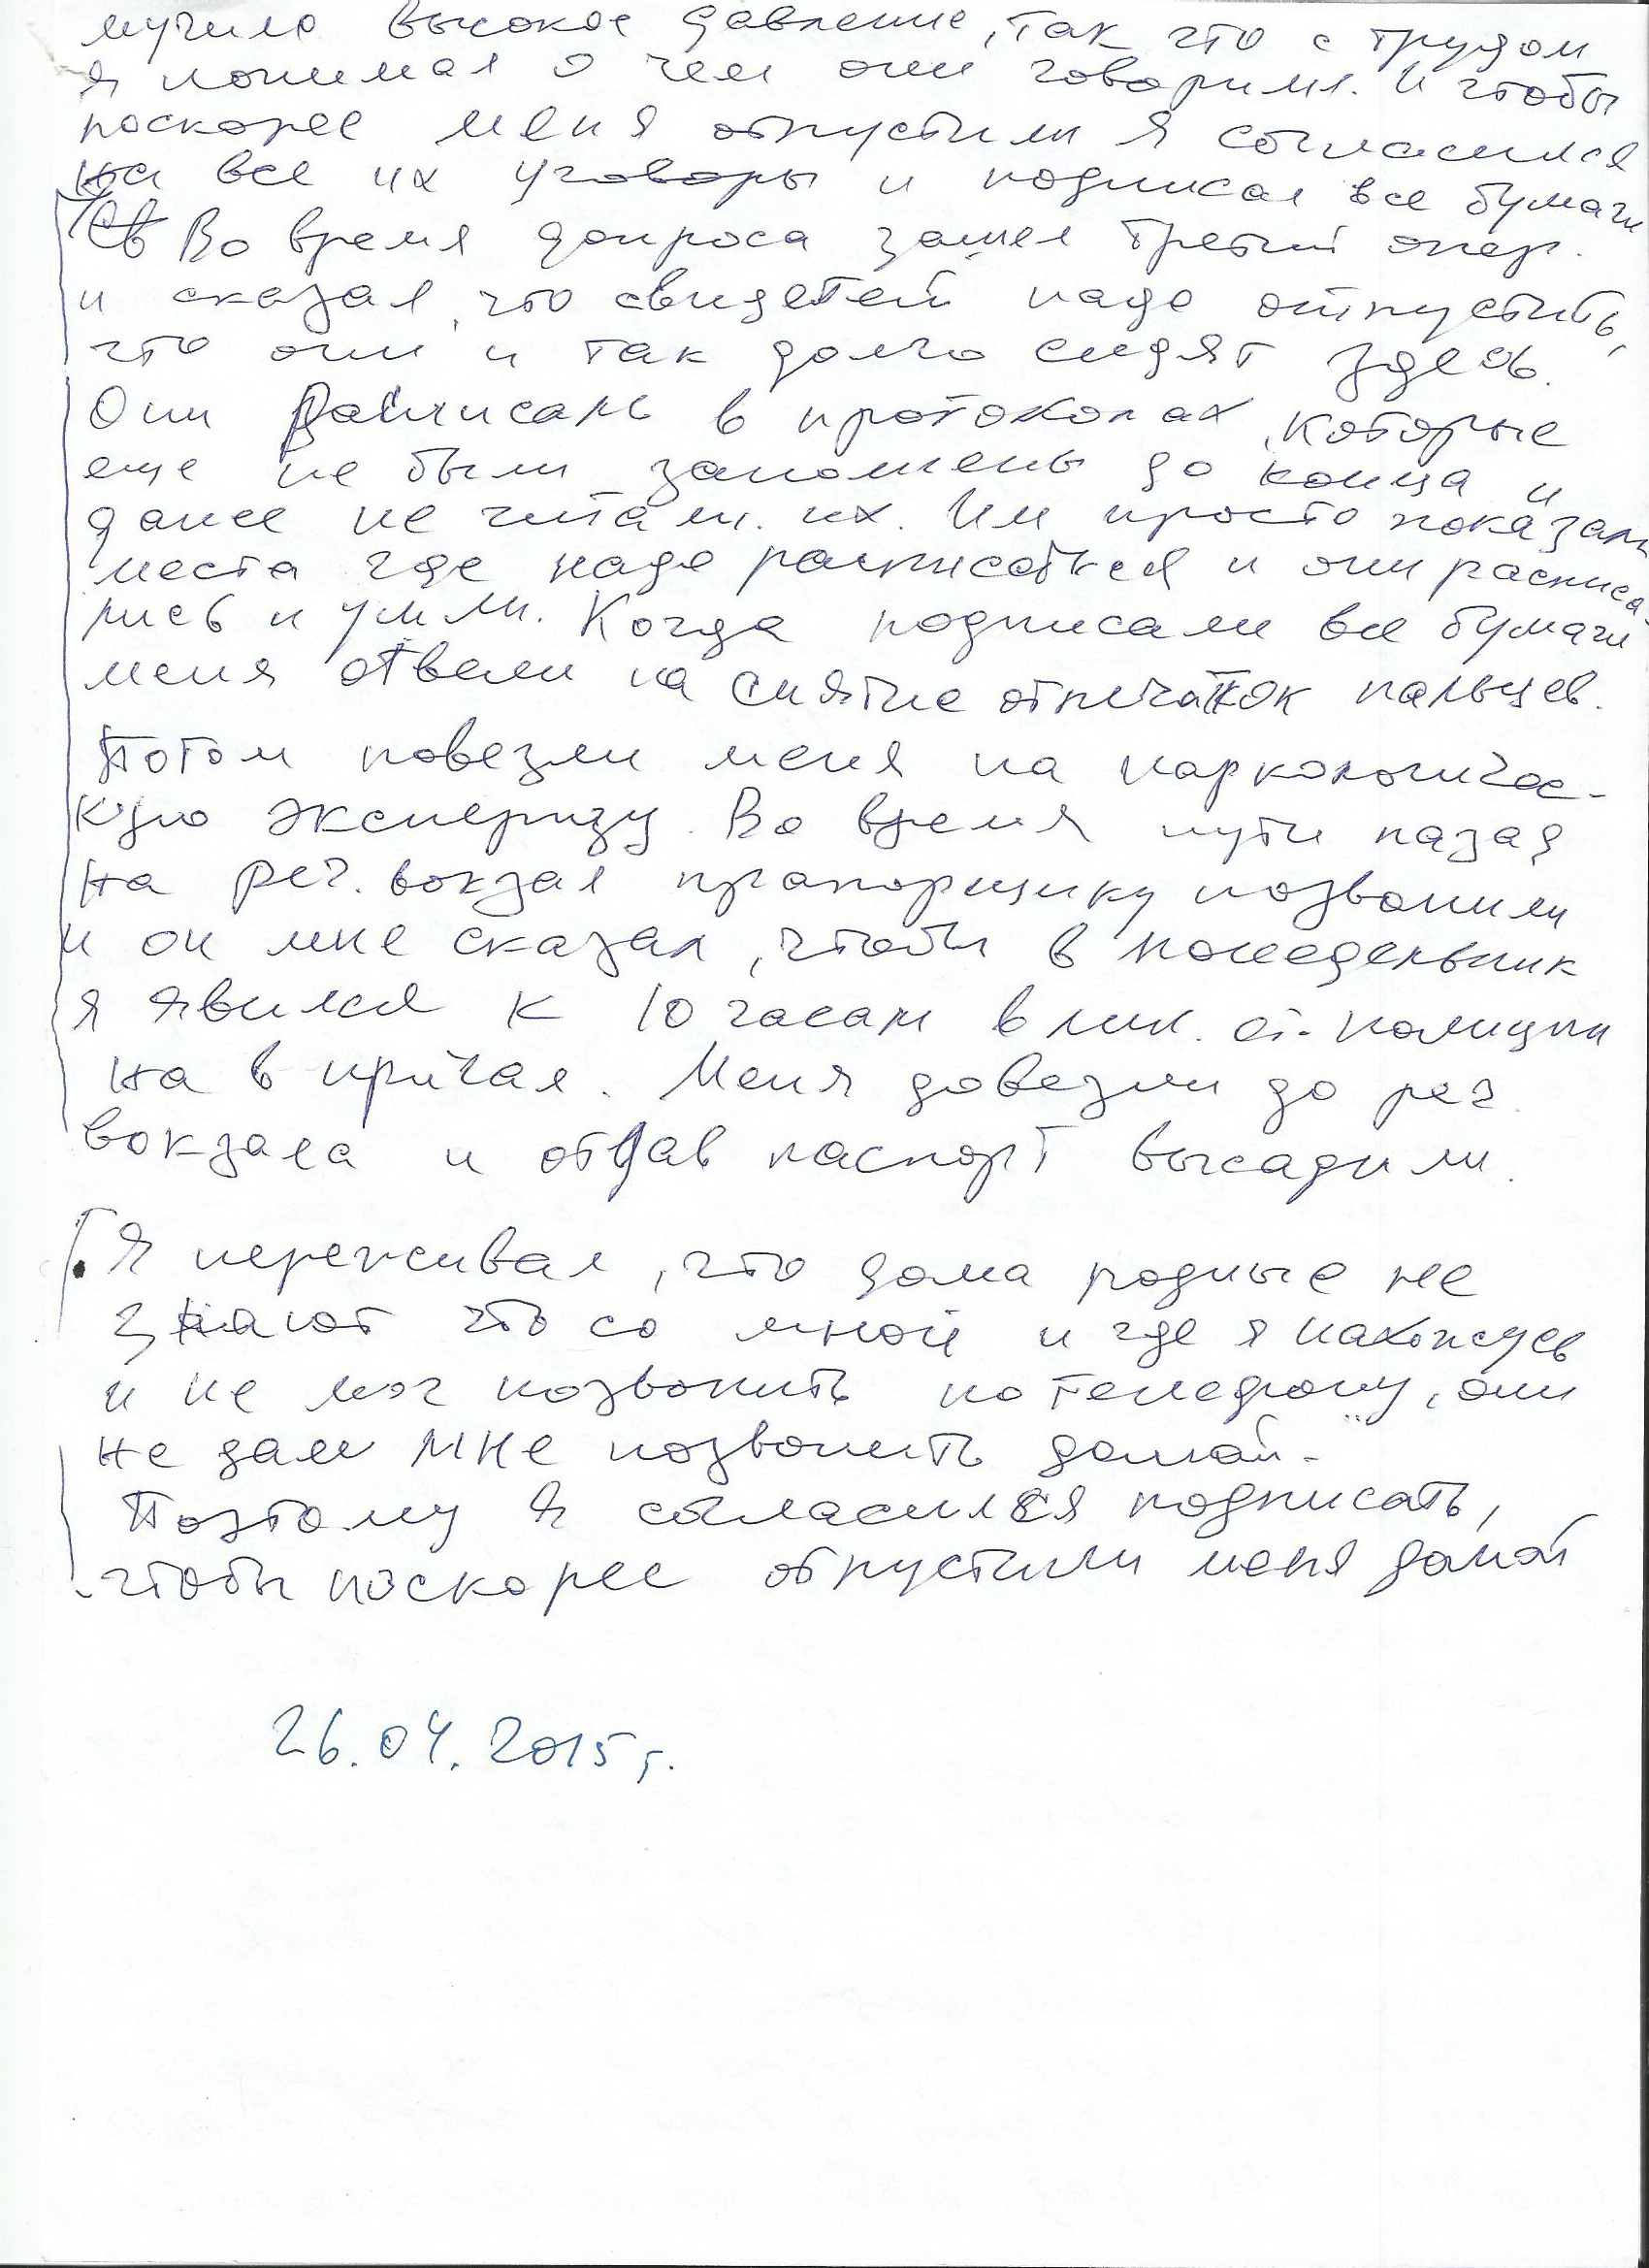 Иллюстрация к обращению Тян Эммы к общественности по факту правового «беспредела» сотрудников правоохранительных органов Самарской области в отношении её мужа